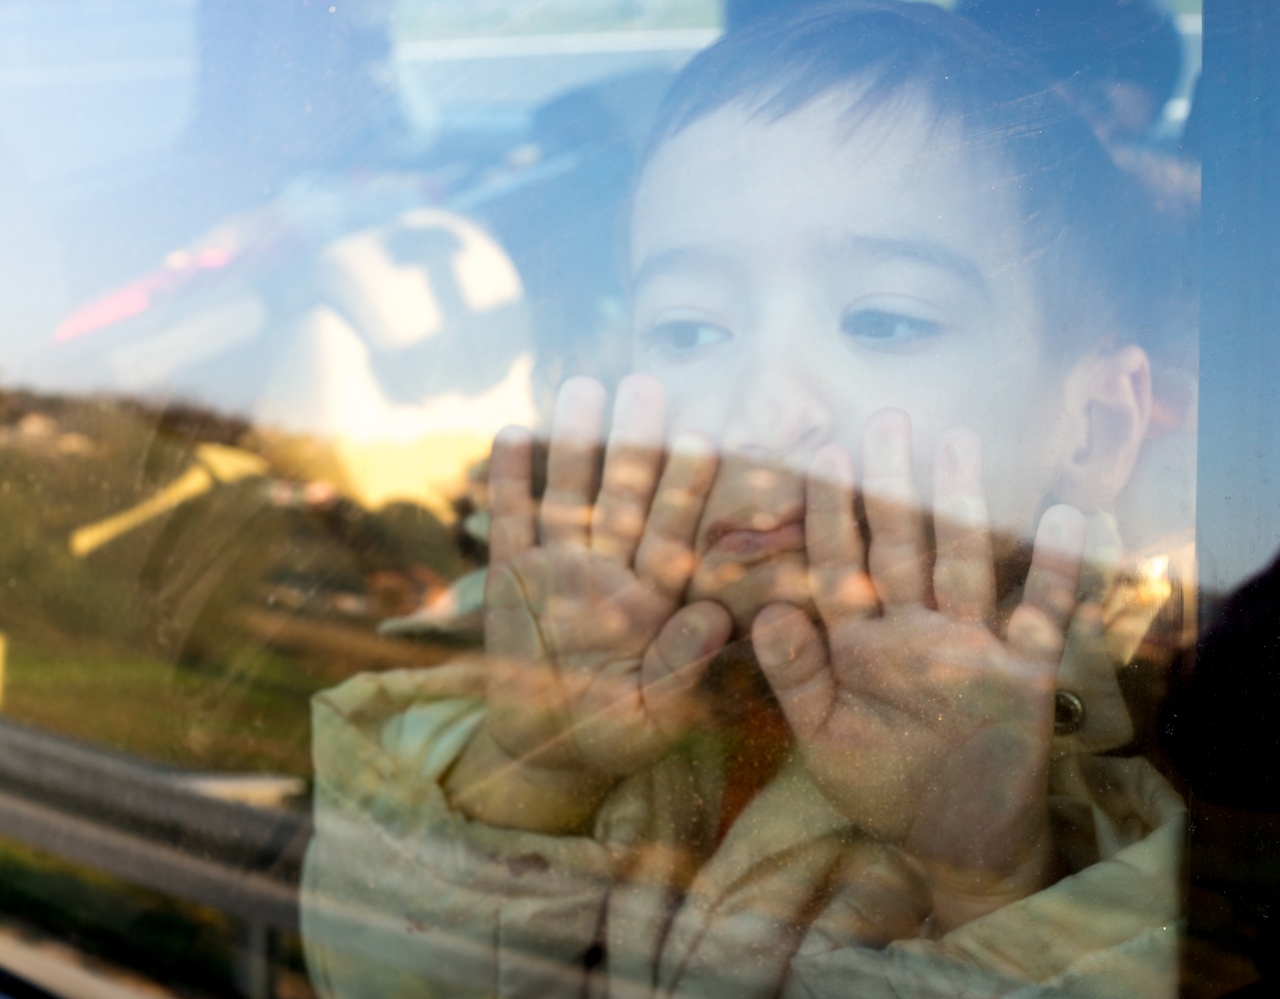 Balta és drótkötél segítségével mentettek ki egy gépkocsiban rekedt gyermeket a Homoksoron